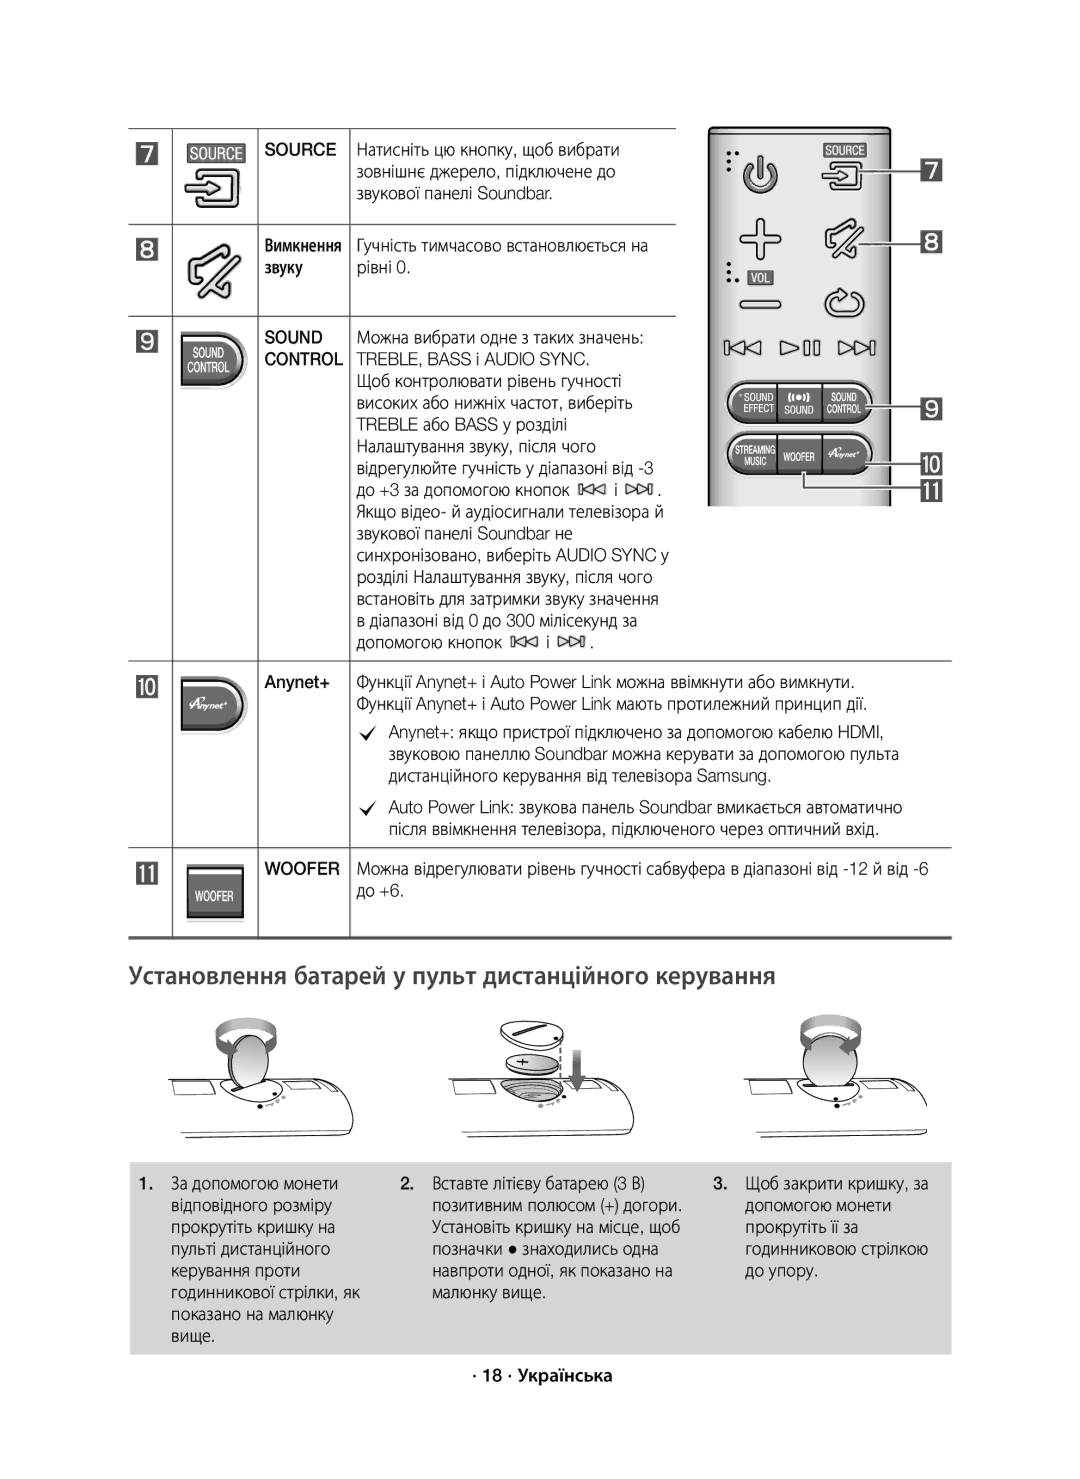 Samsung HW-J7500/RU manual Установлення батарей у пульт дистанційного керування 